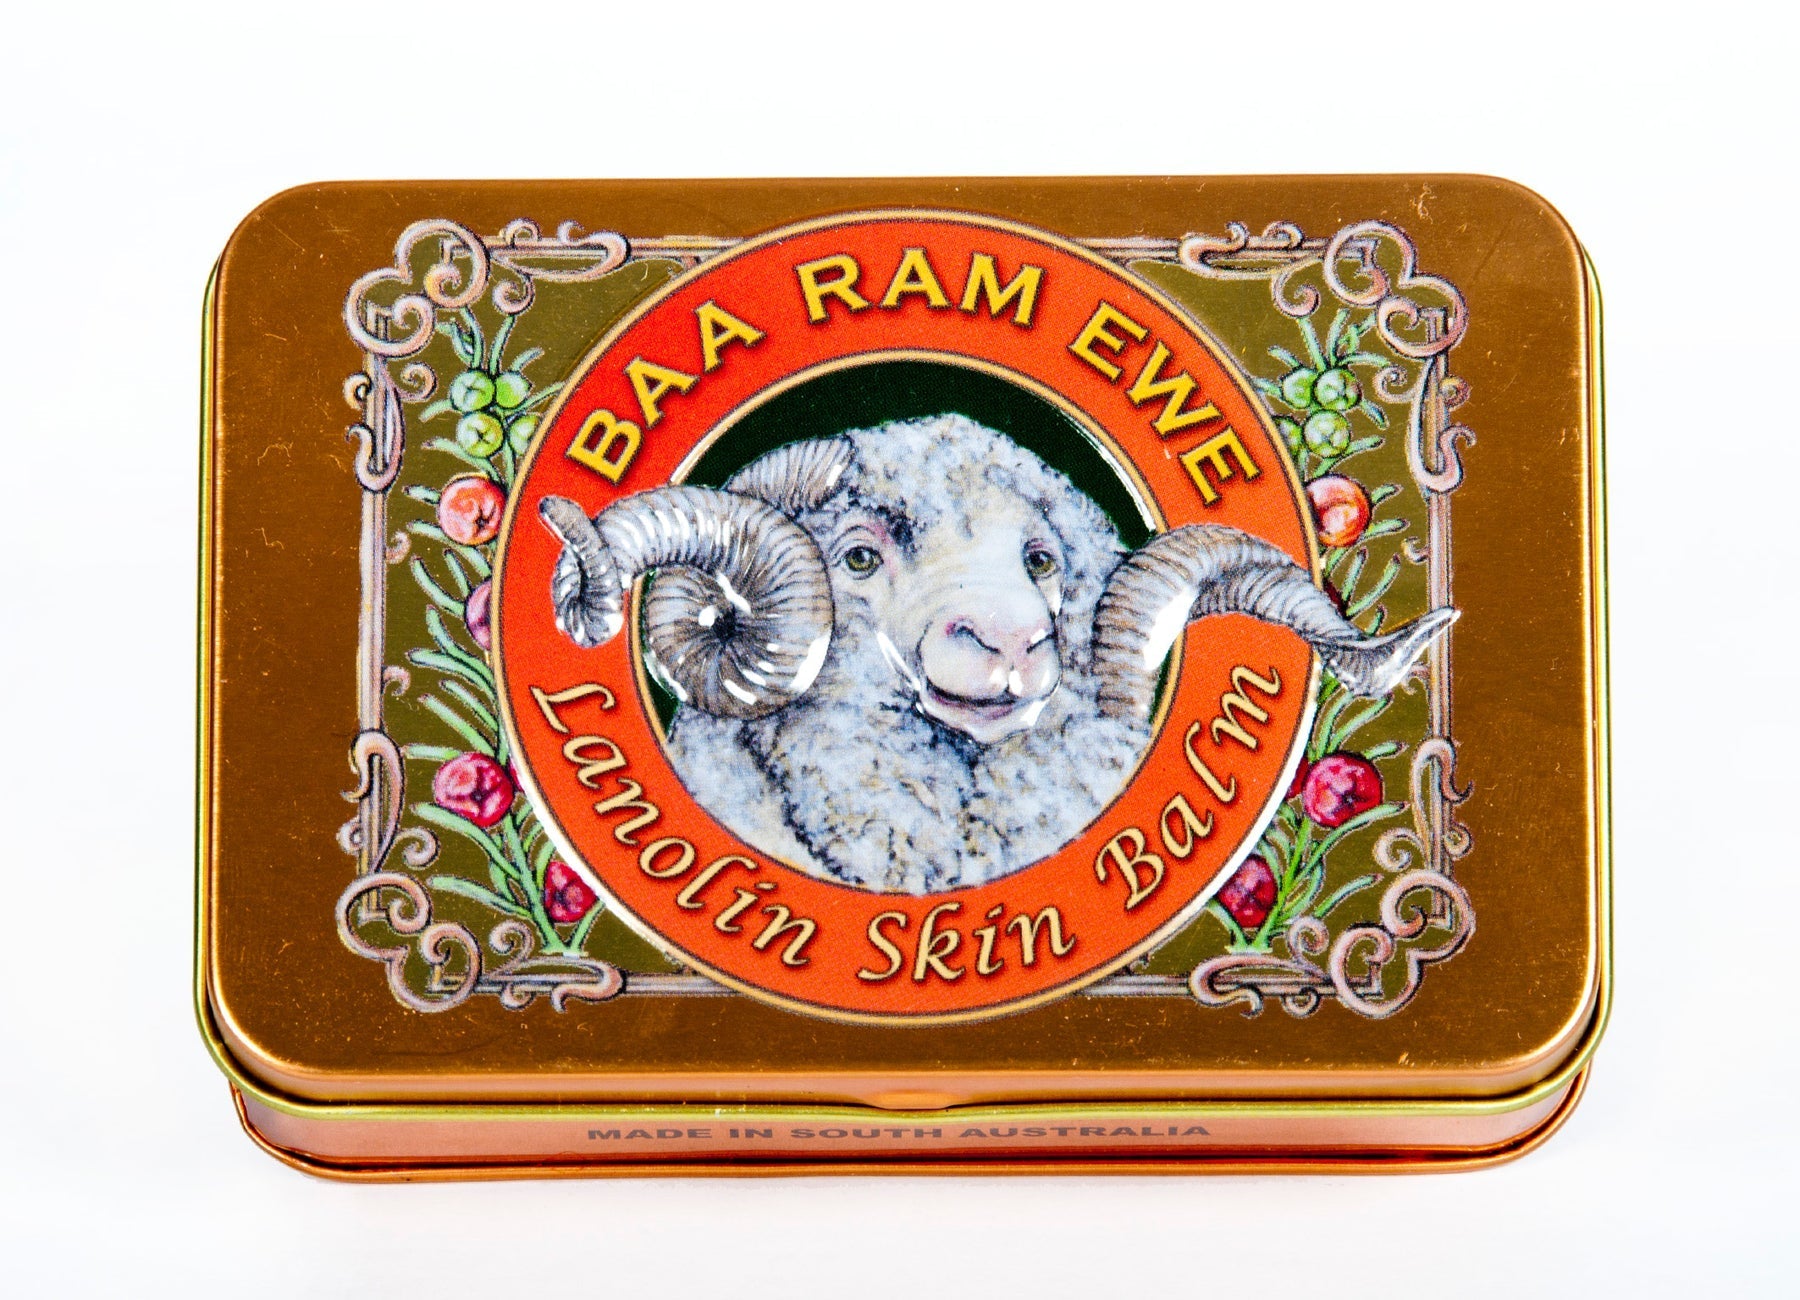 Skin Balm - Baa Ram Ewe by Lucamar Skin Care Lucamar Skin Care 